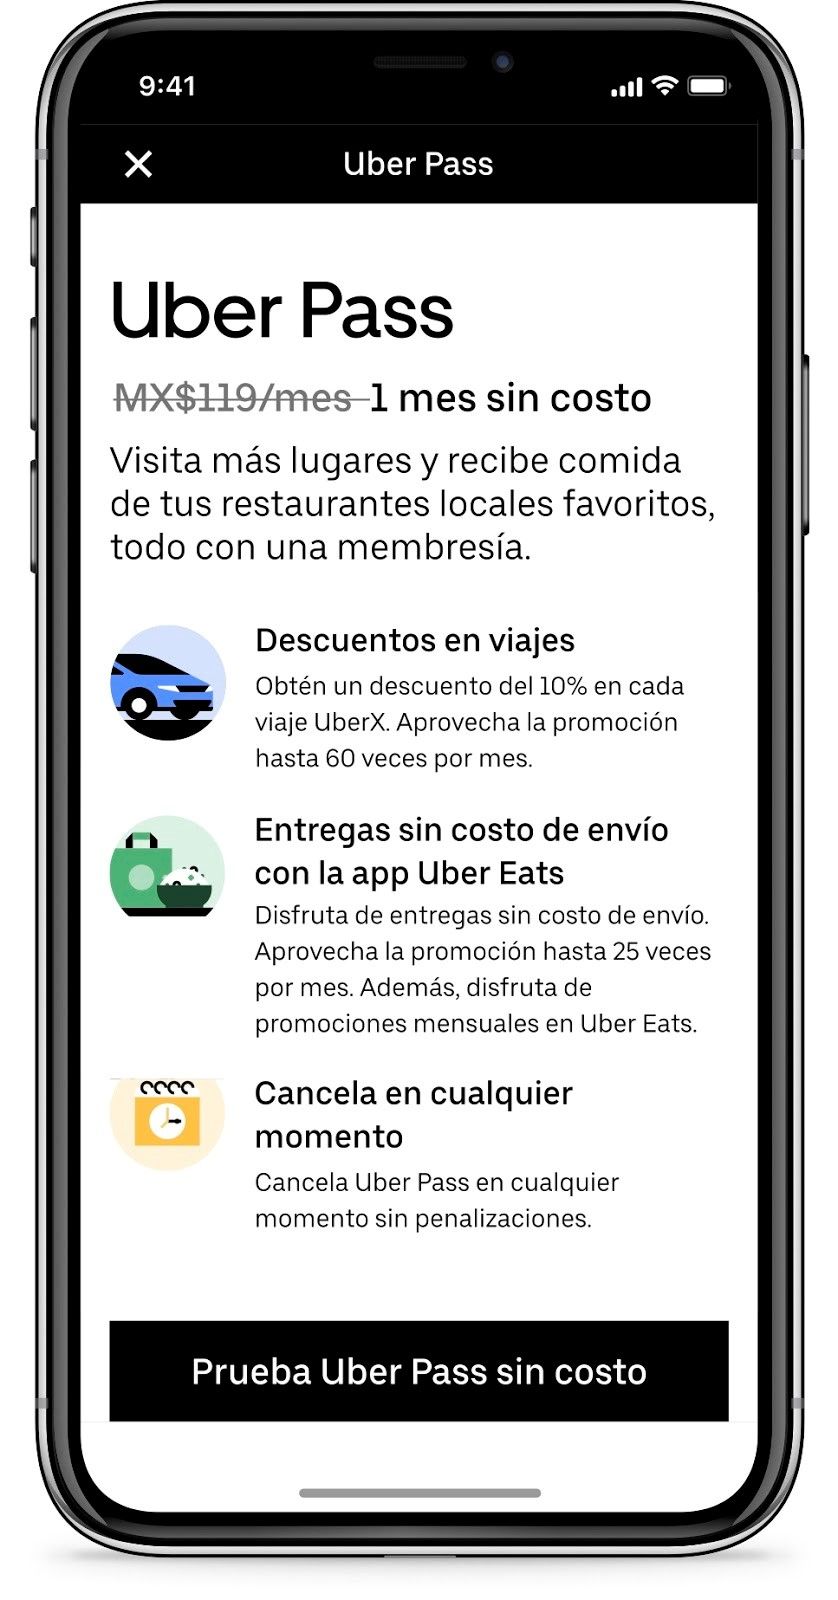 Uber Pass llega a México,
la membresía para obtener descuentos en viajes y comidas